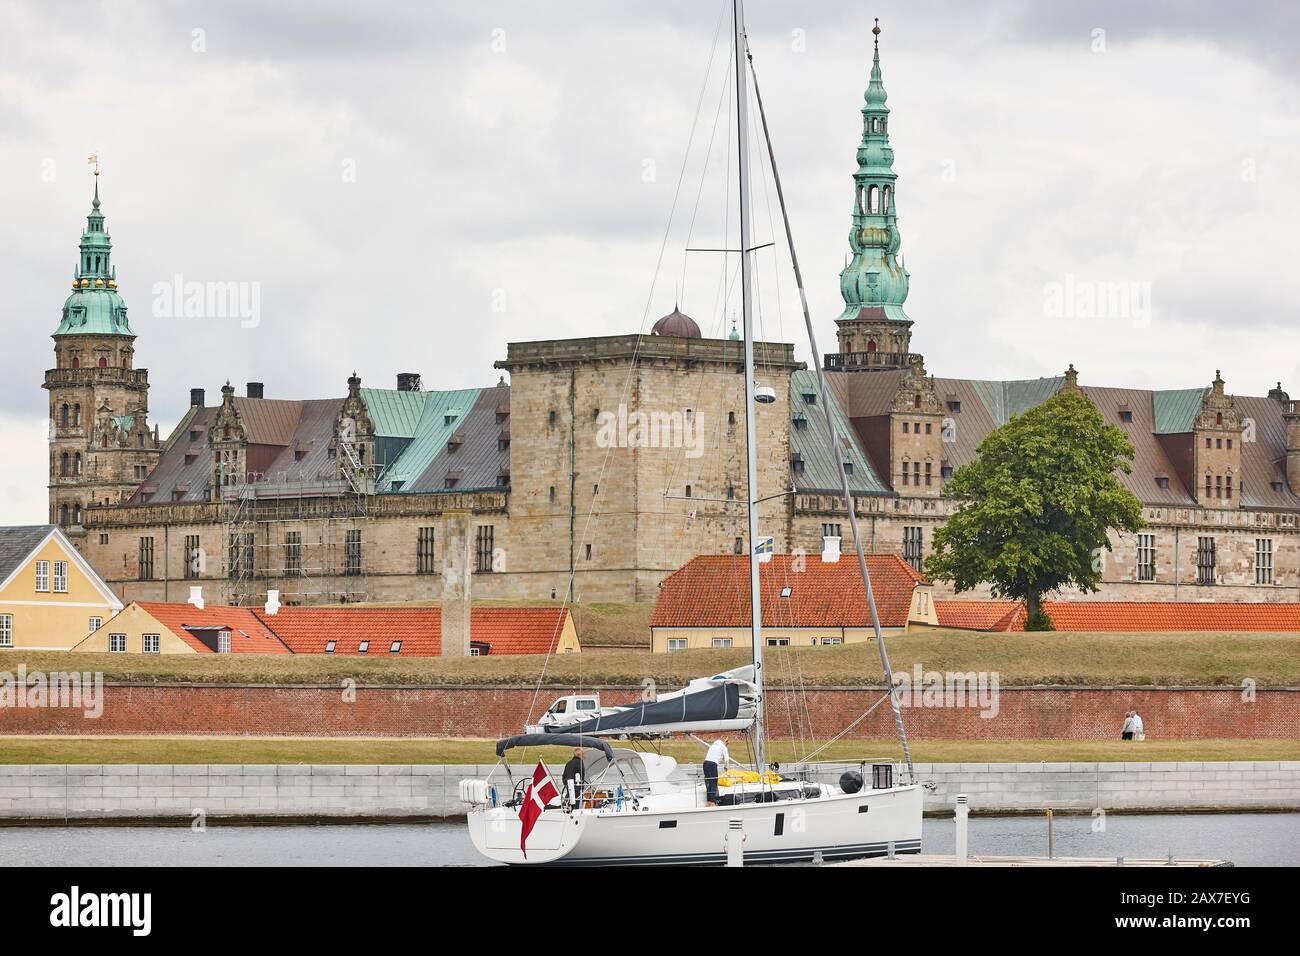 Kronborg Helsingor Elsinor castle fortification and sailboat. Denmark Stock Photo